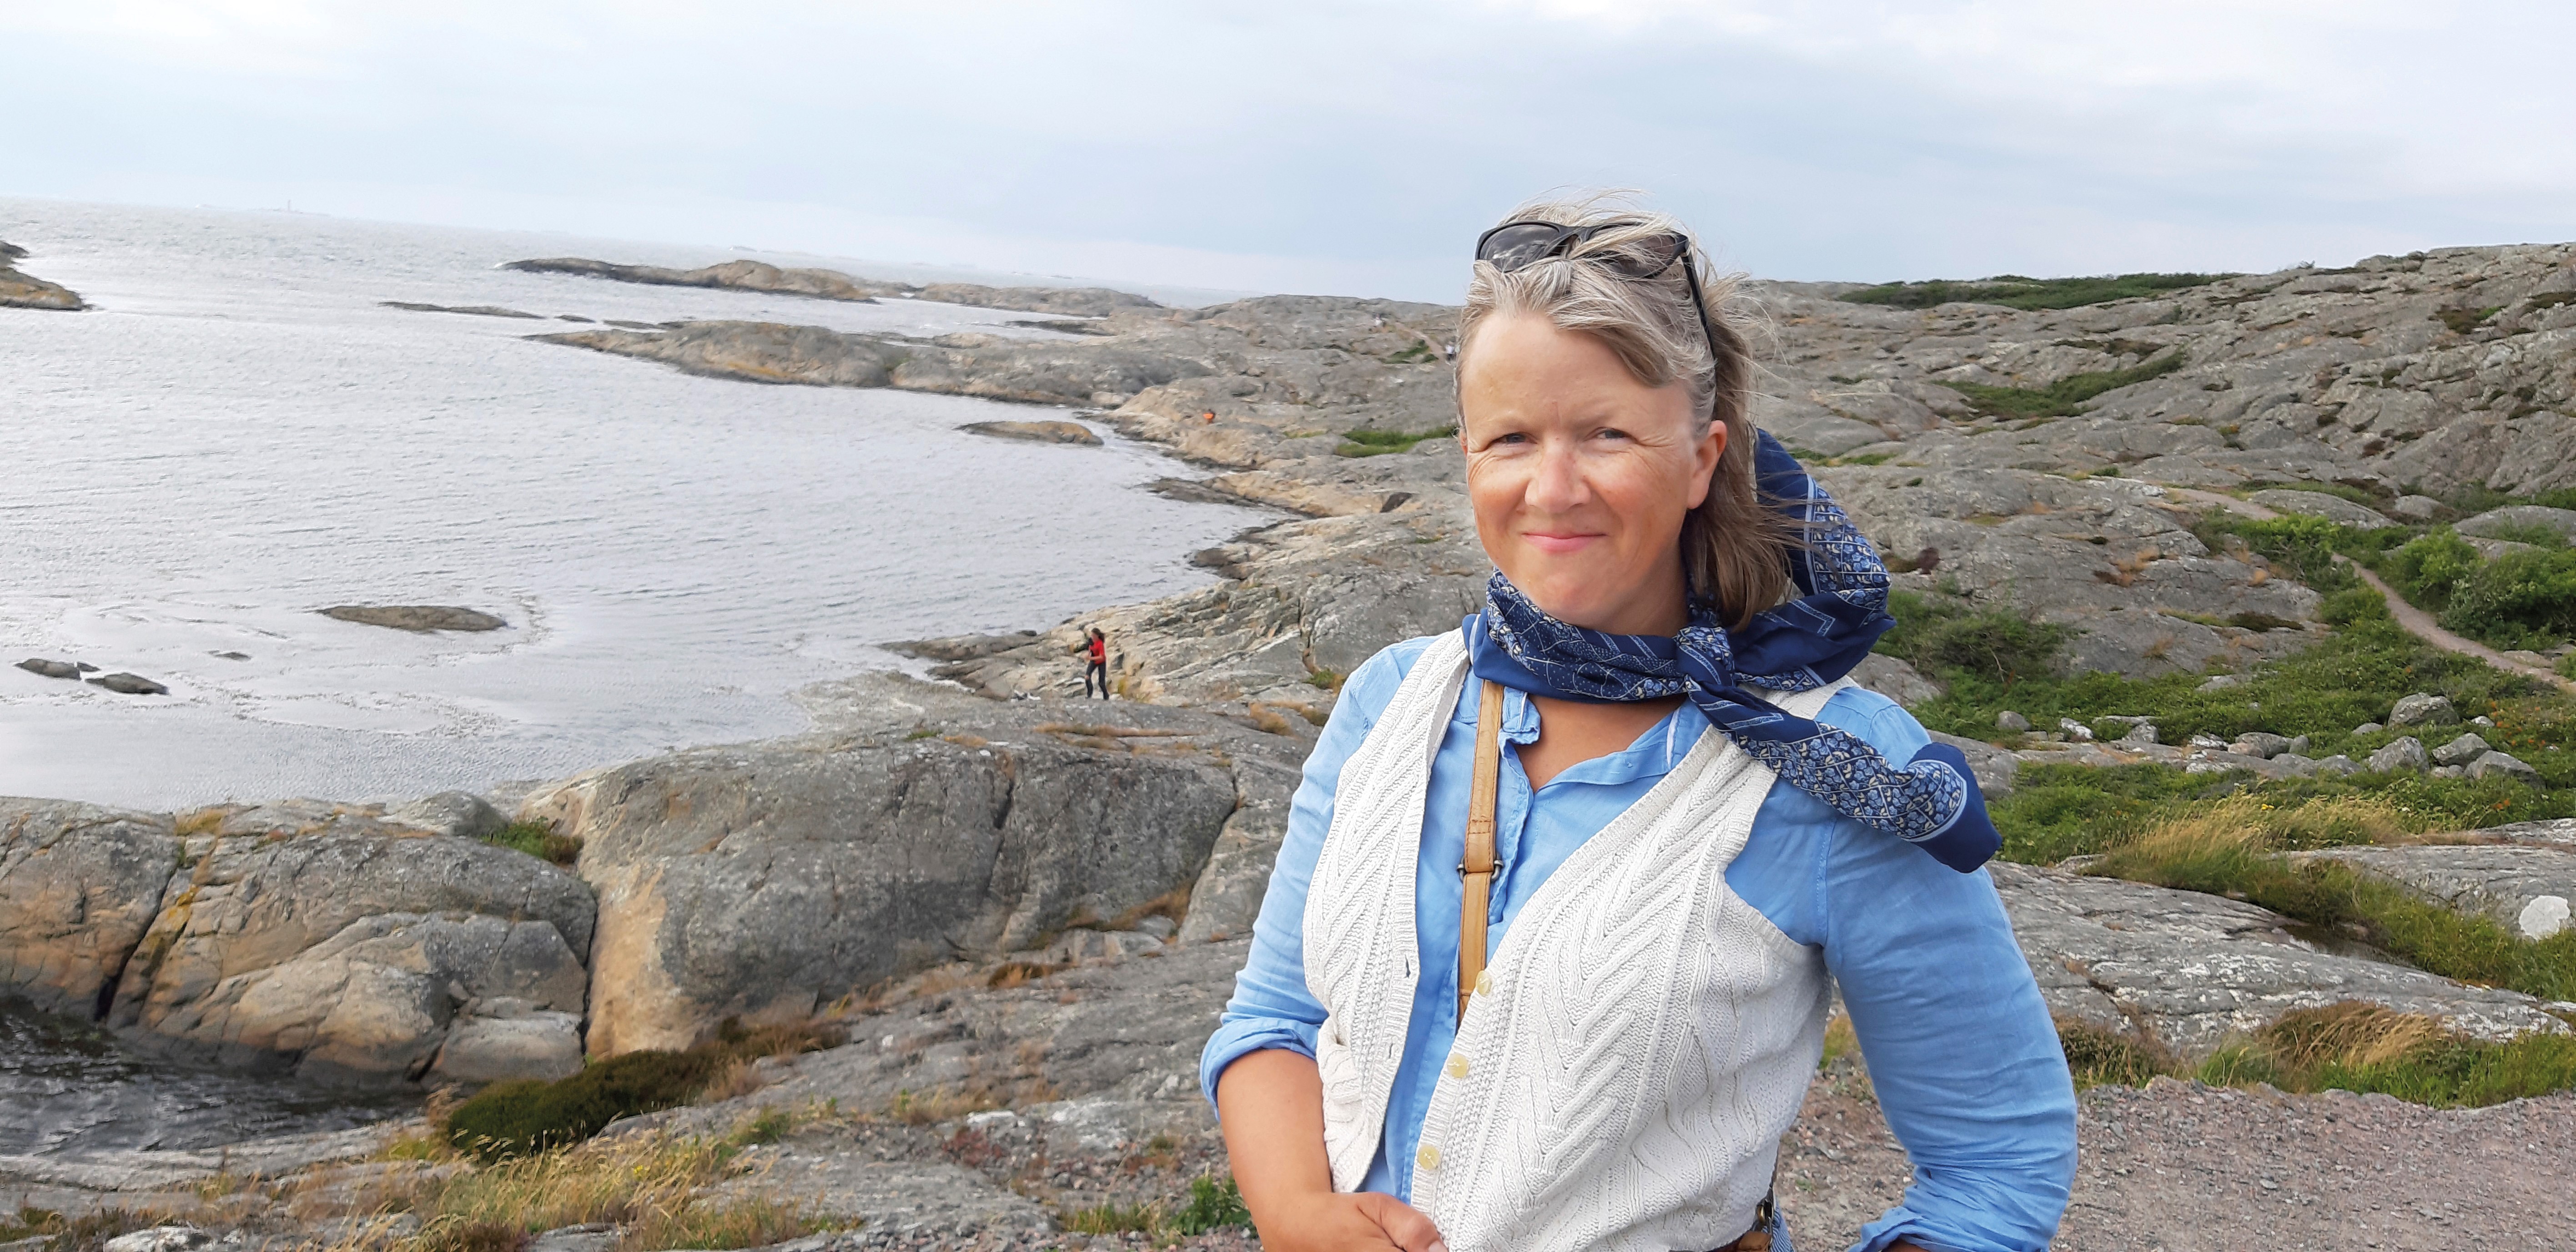 Anna-Sophia Bonde framför ett klipplandskap mer mot en havsvik.